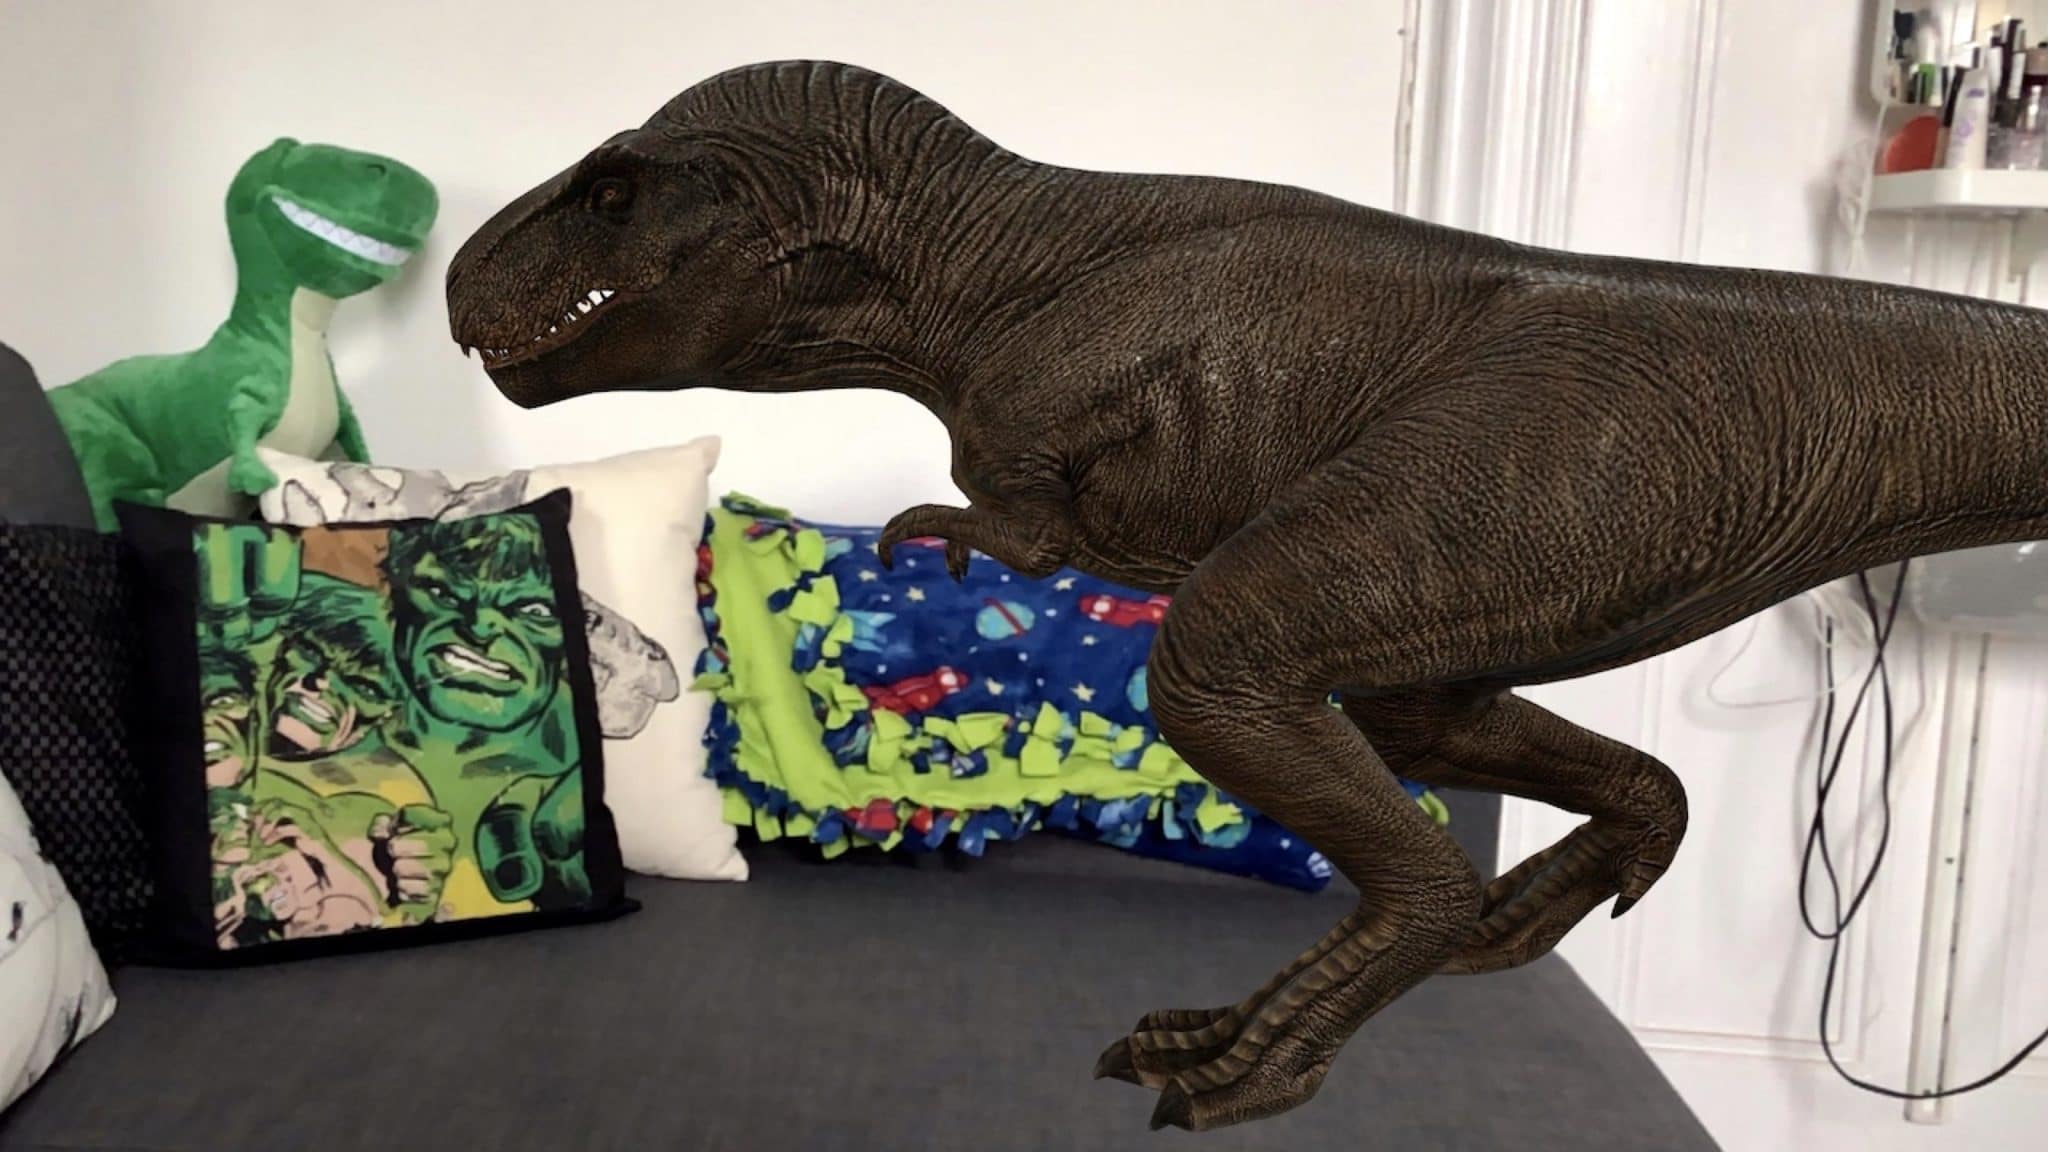 10 ديناصورات من جوجل يمكنك عرضها بأبعاد ثلاثية